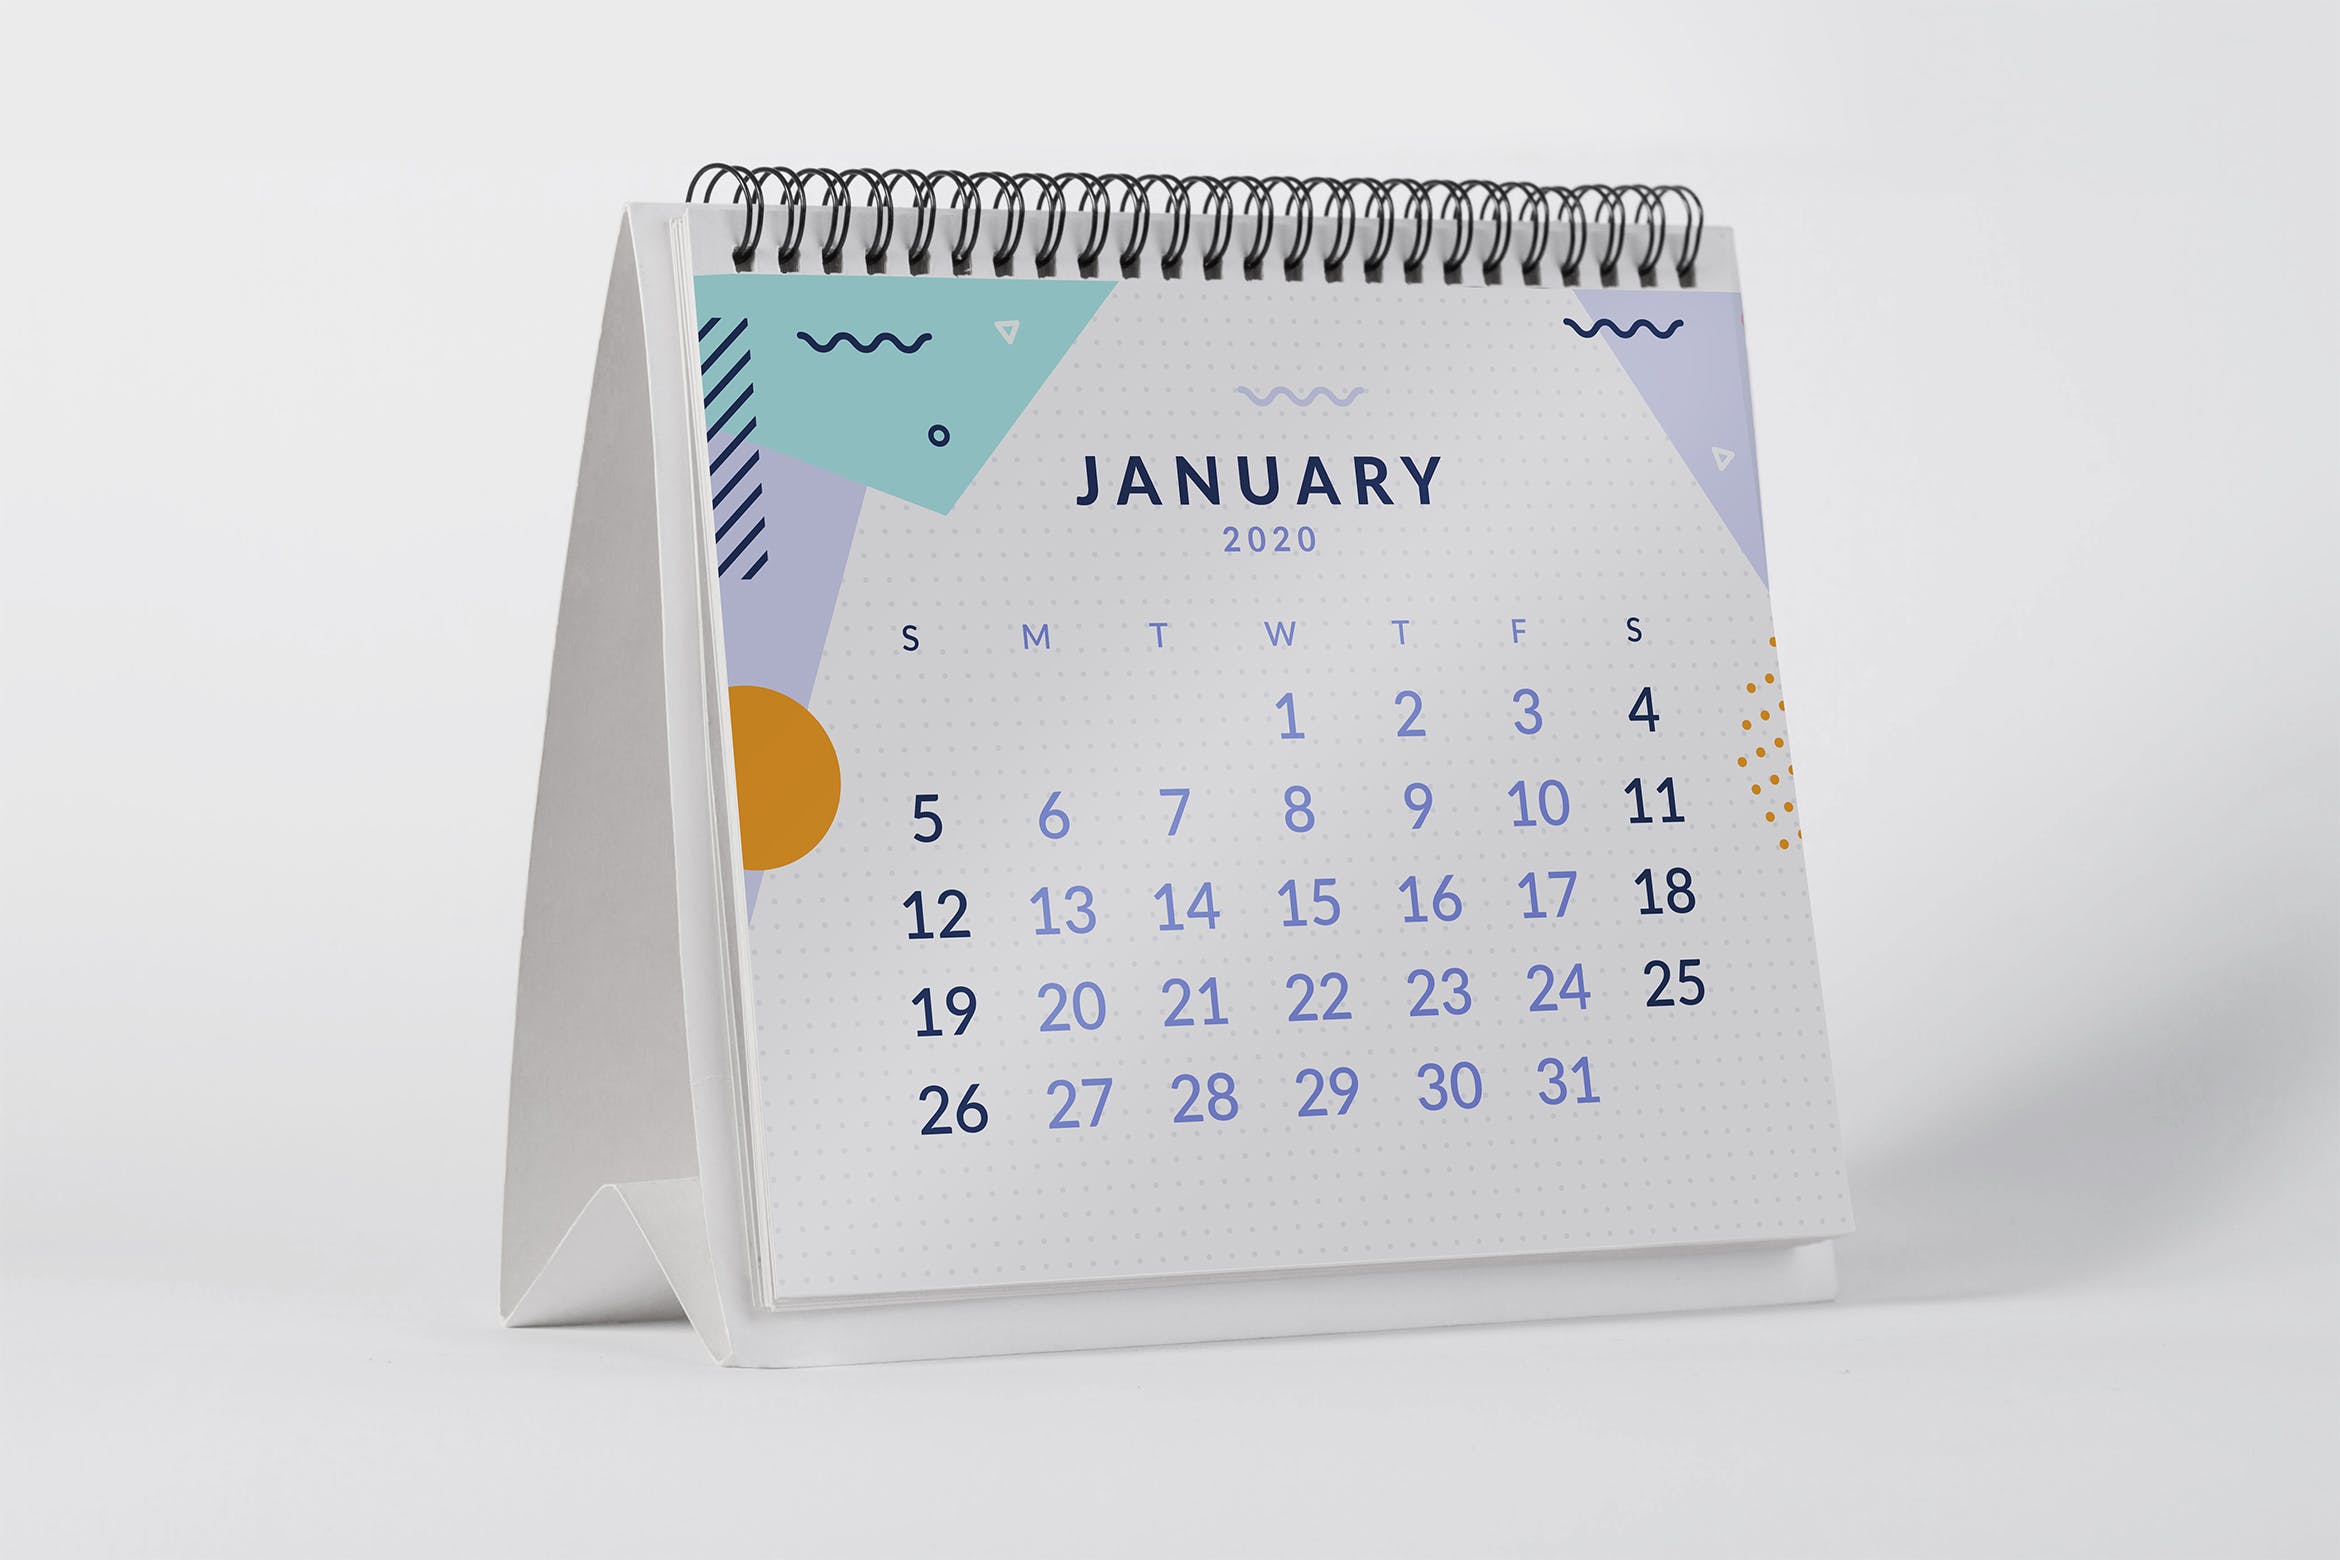 2020年桌面日历设计样机大洋岛精选模板 2020 Desktop Calendar Mock Up插图